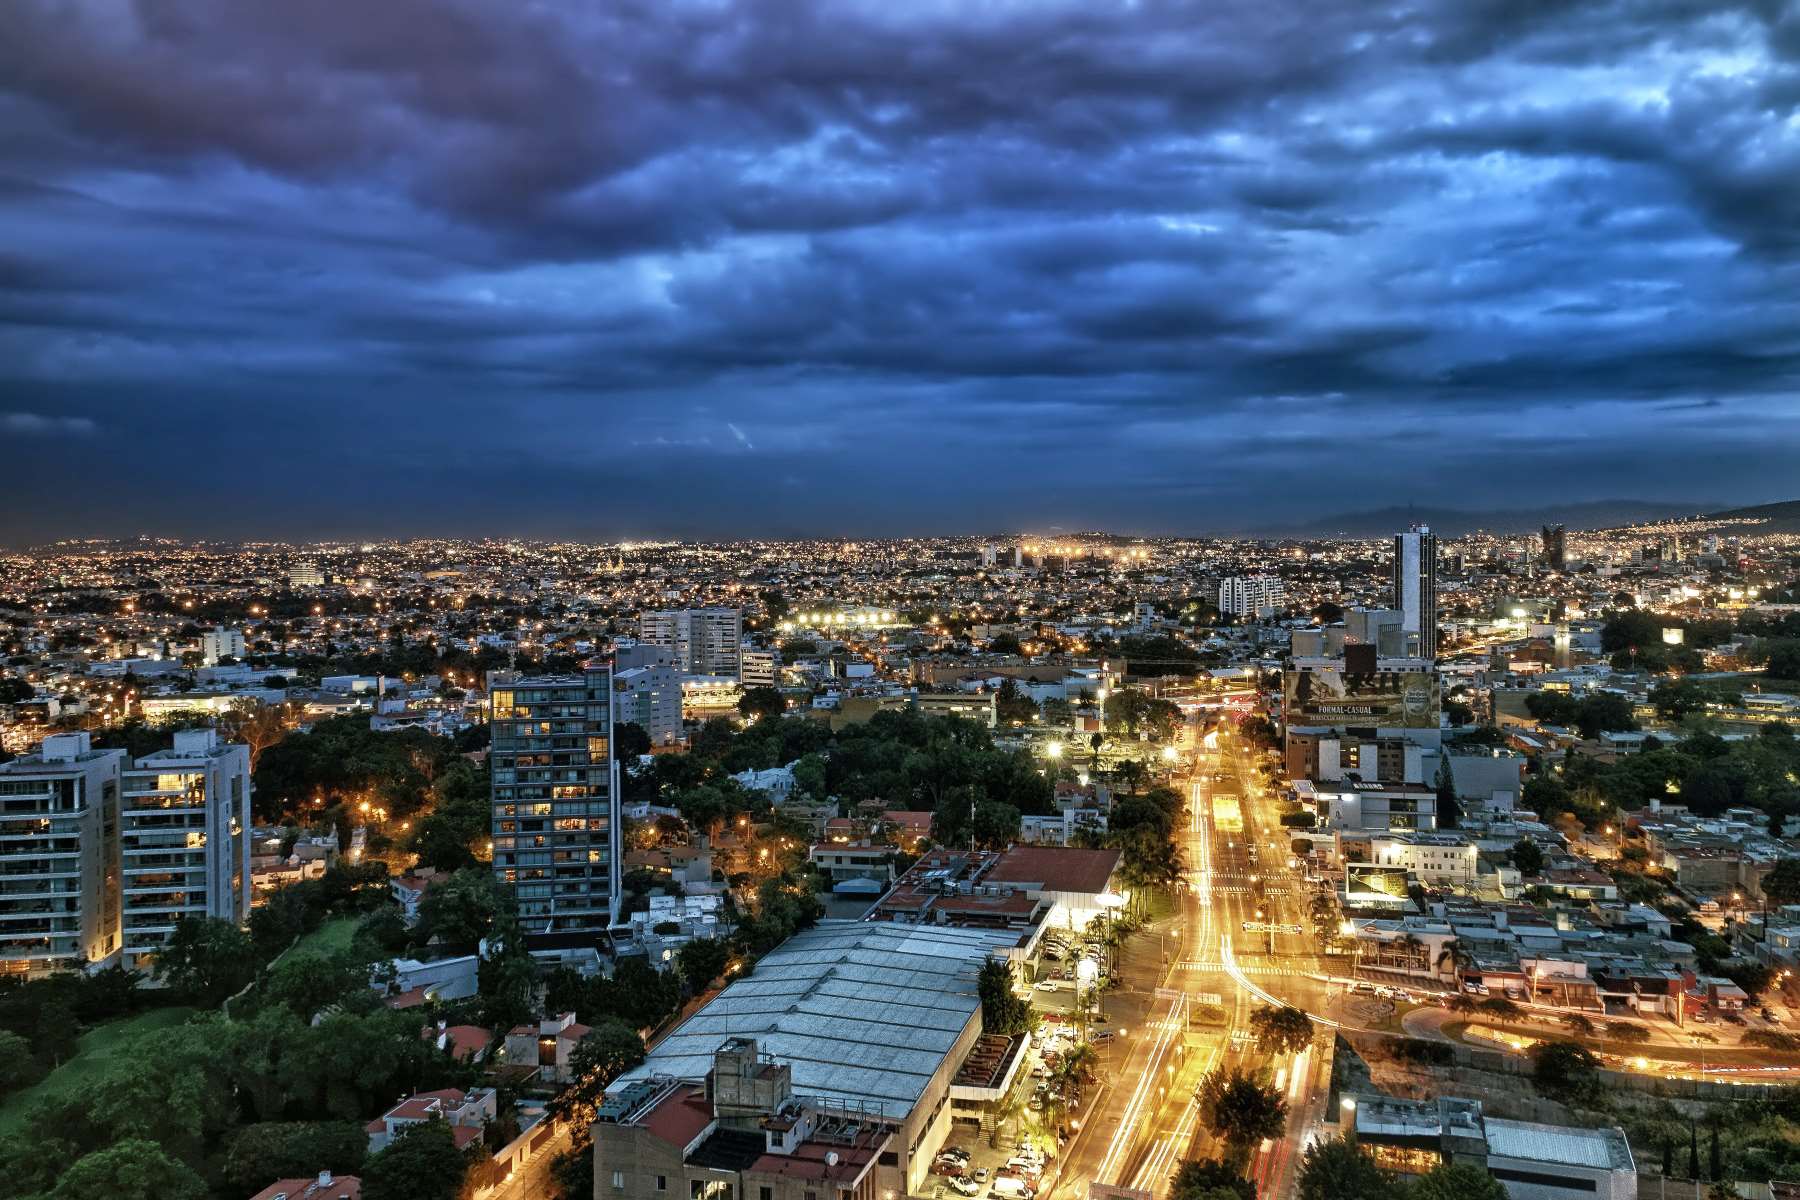 Top 5 Danger Zones In Guadalajara: Nighttime Walking Is A Risky Game!